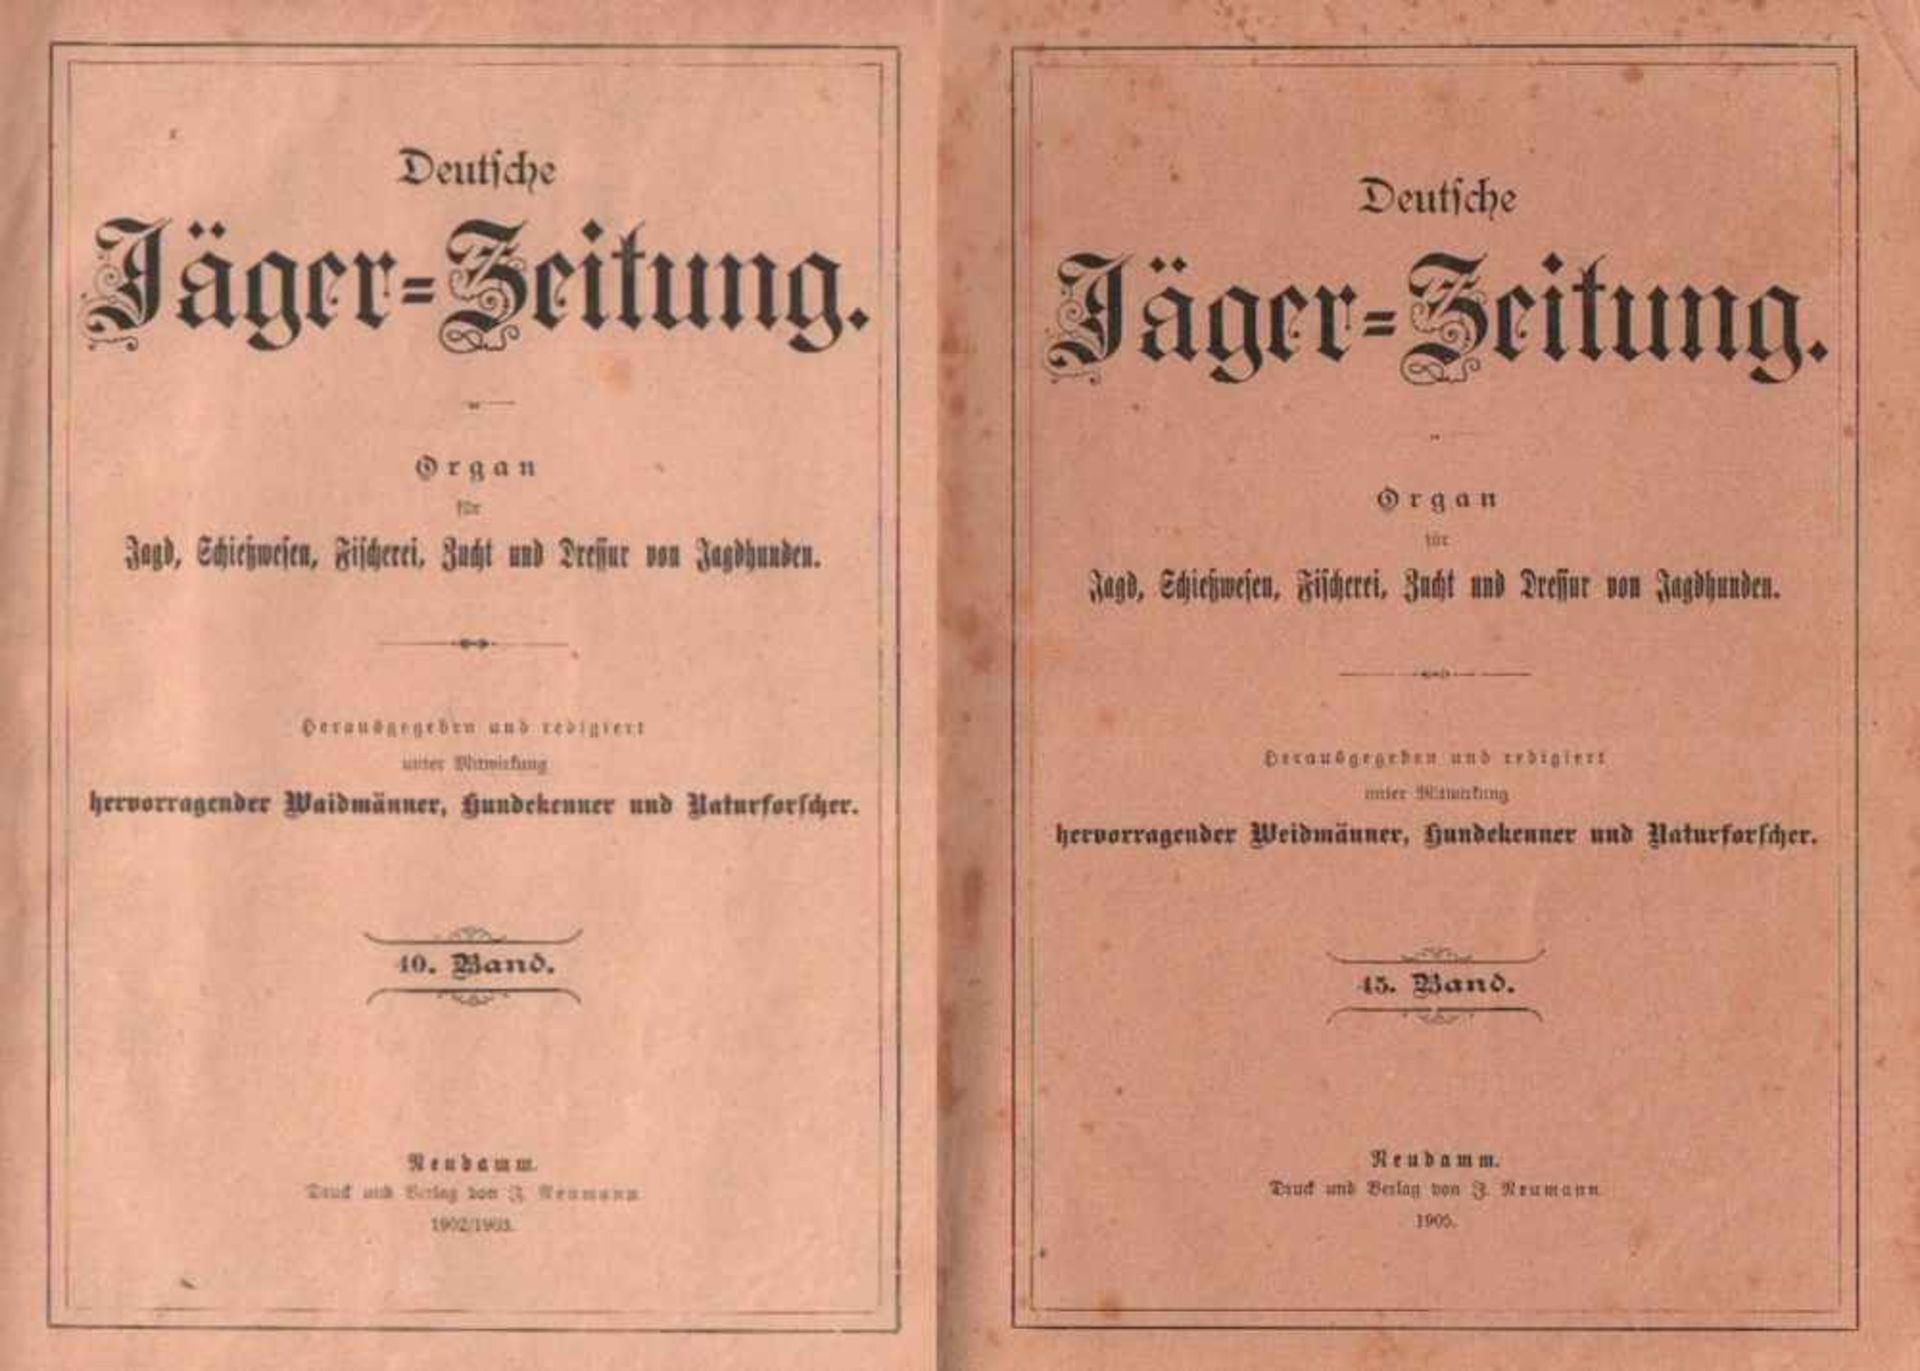 Deutsche Jäger - Zeitung.Organ für Jagd, Fischerei, Zucht und Dressur edler Hunde. Hrsg. und